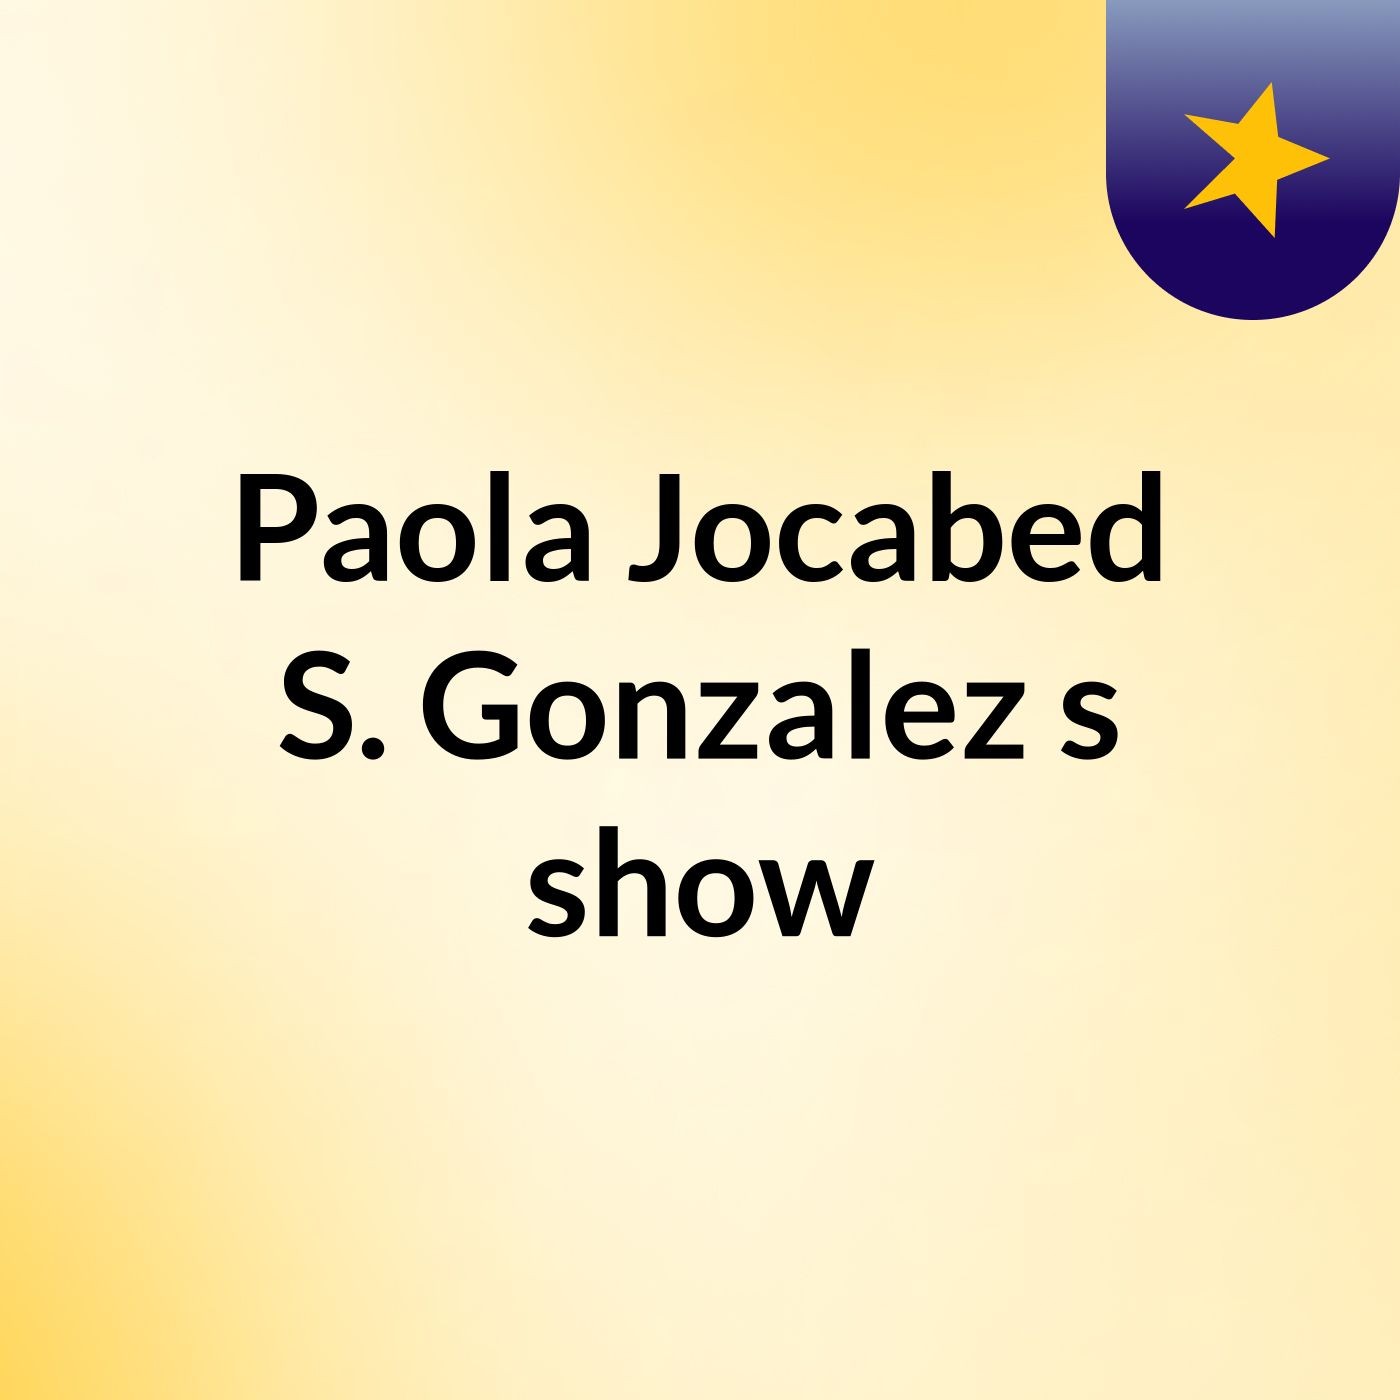 Paola Jocabed S. Gonzalez's show